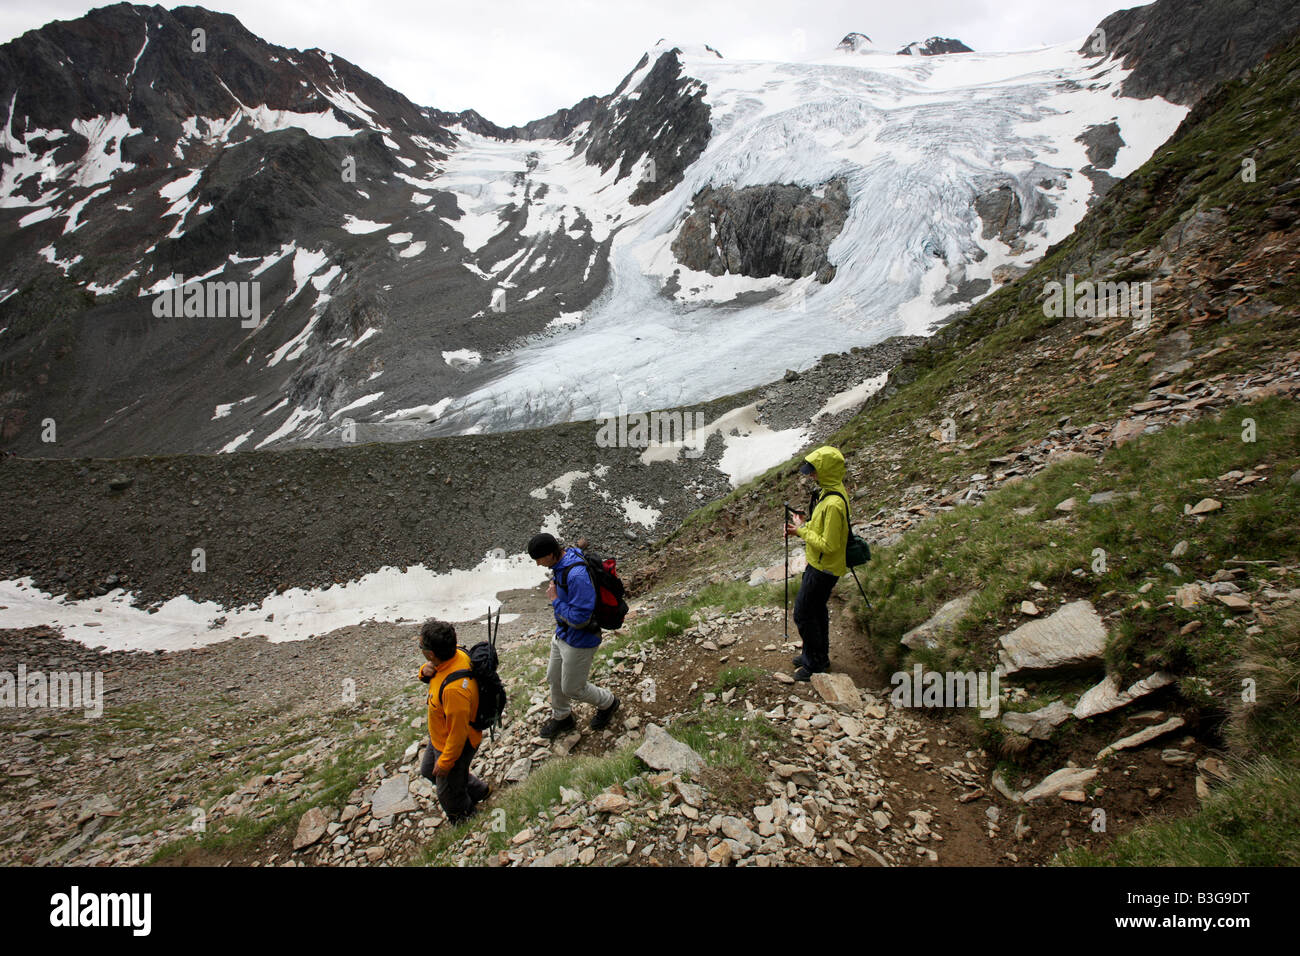 AUT, Austria, Tyrol: Stubaital, Stubai Valley. Hiking in the mountains to the Stubai glacier. Stock Photo